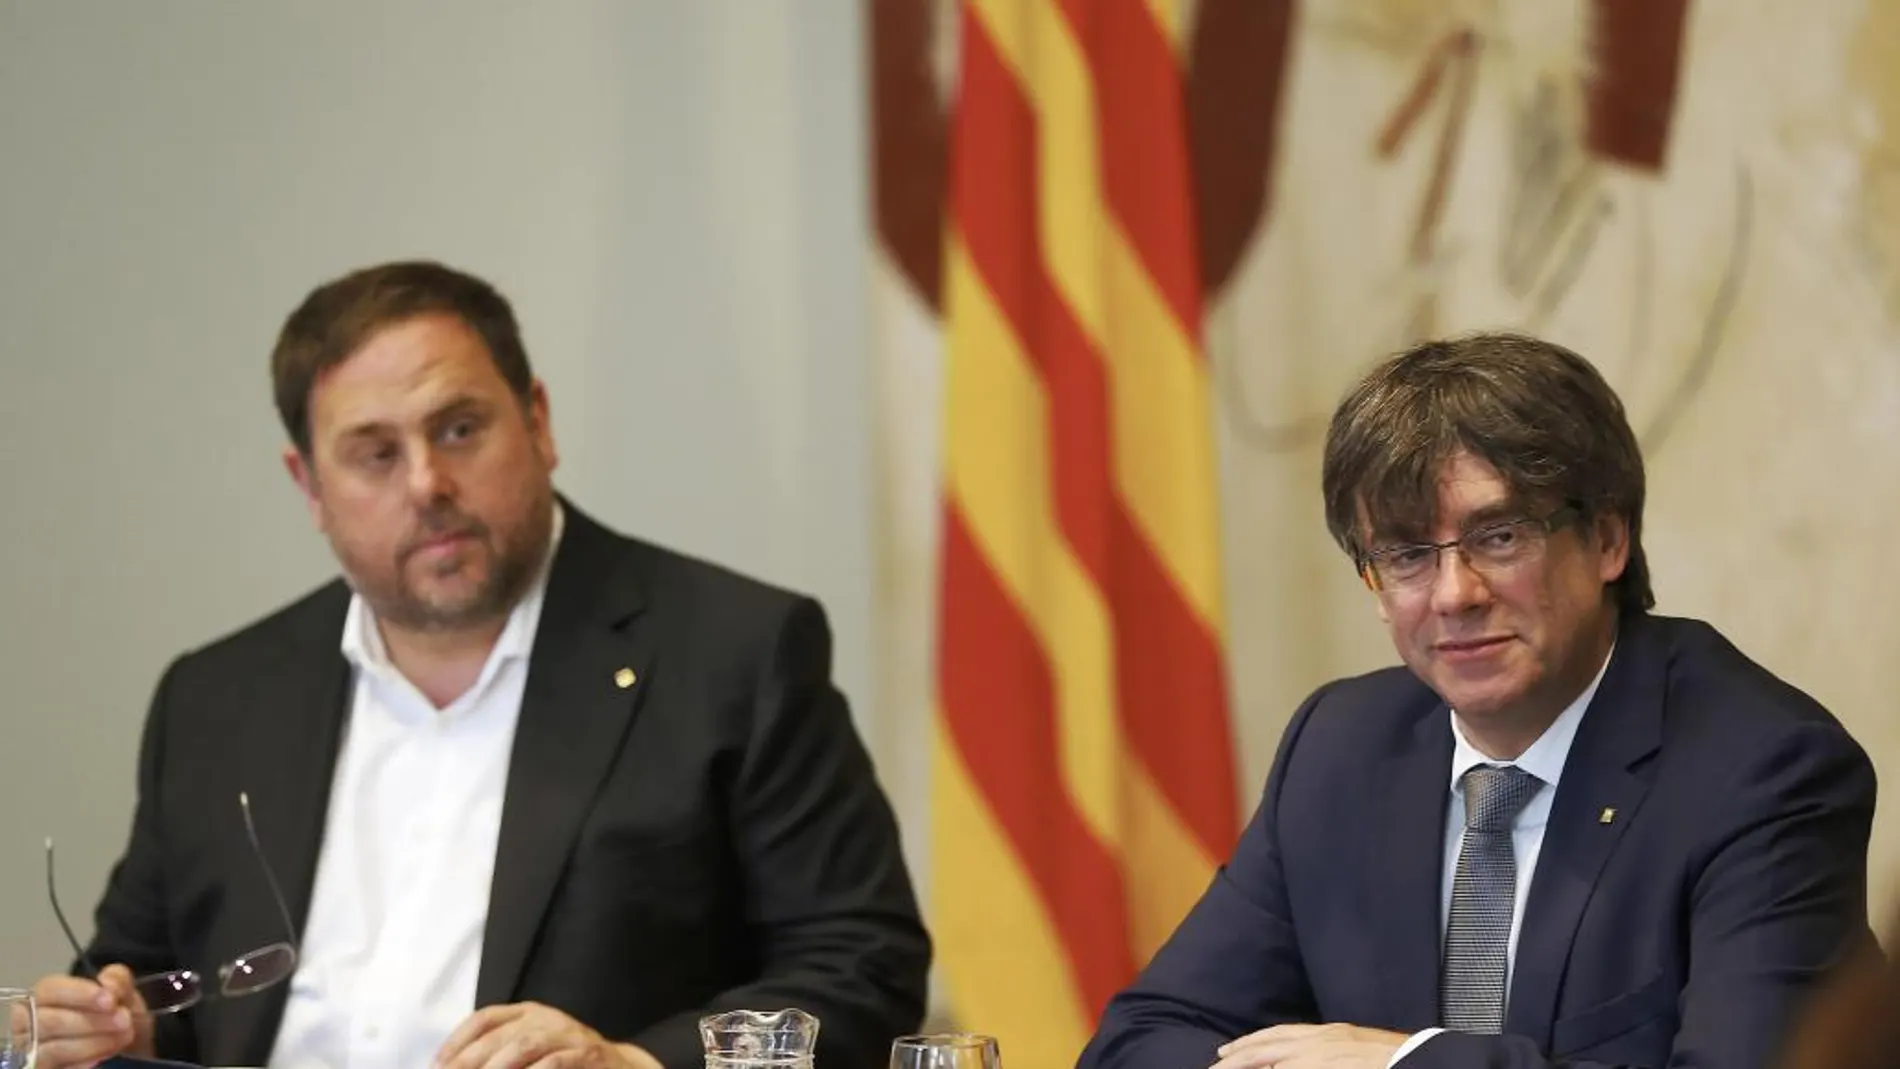 El presidente de la Generalitat, Carles Puigdemont, y su vicepresidente, Oriol Junqueras